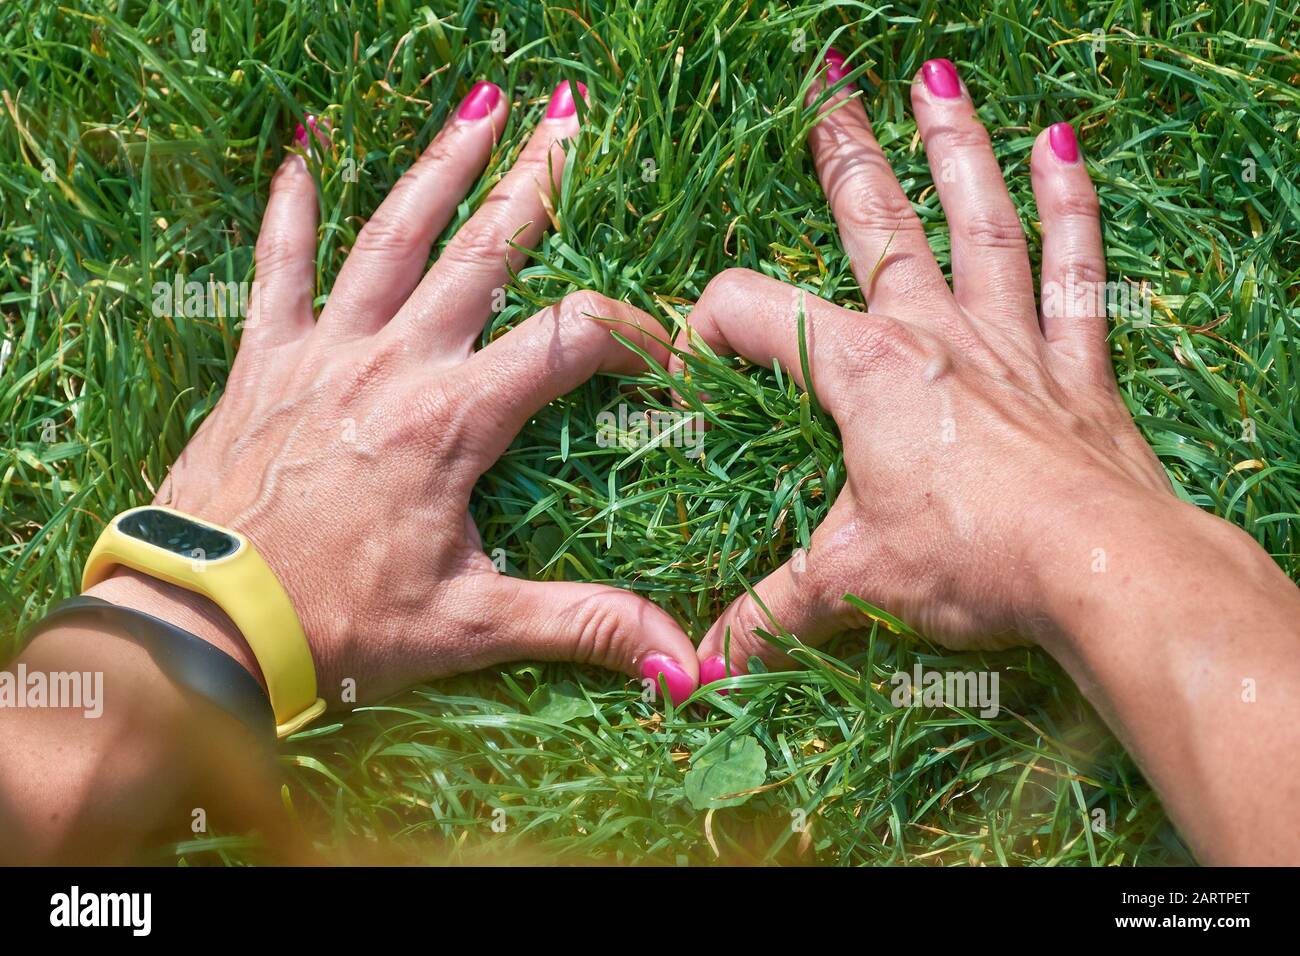 Frau, die mit ihren Händen ein herzförmiges Schild in perfektem grünem Gras trägt und dabei ein modernes Tech-Armband trägt. Verbindung zum Naturkonzept. Stockfoto